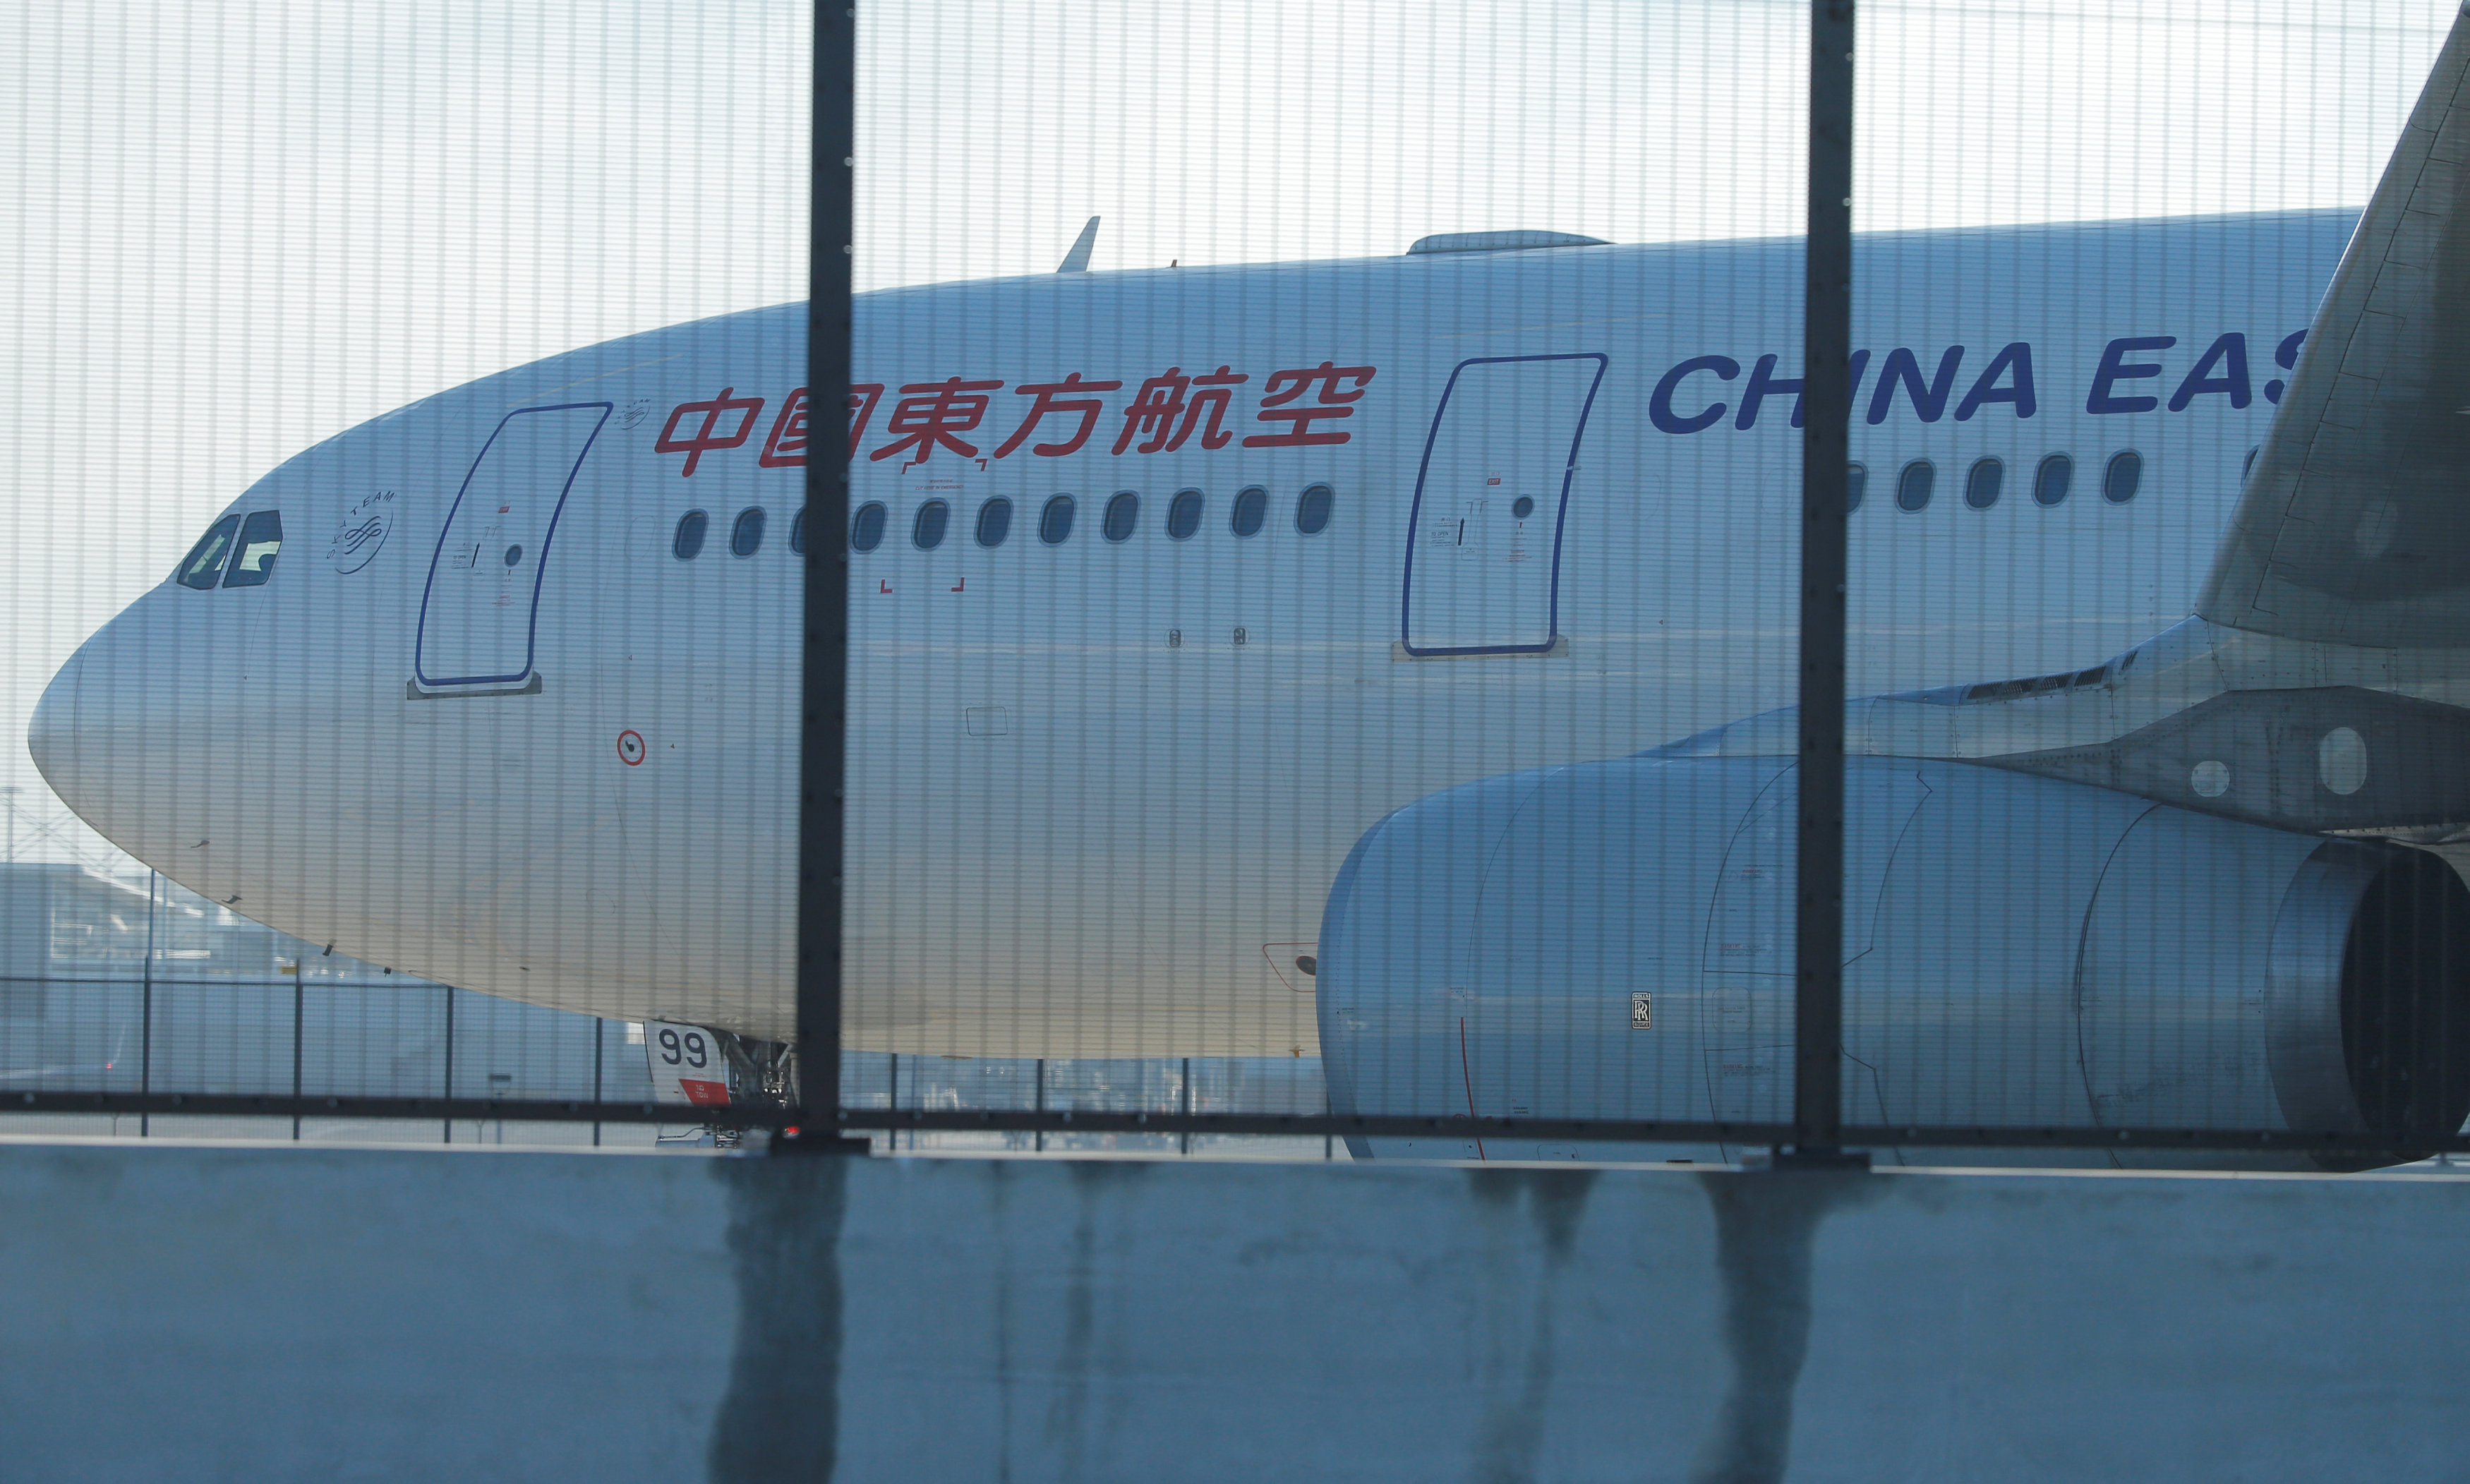 El misterioso silencio de los pilotos minutos antes del accidente del avión en China